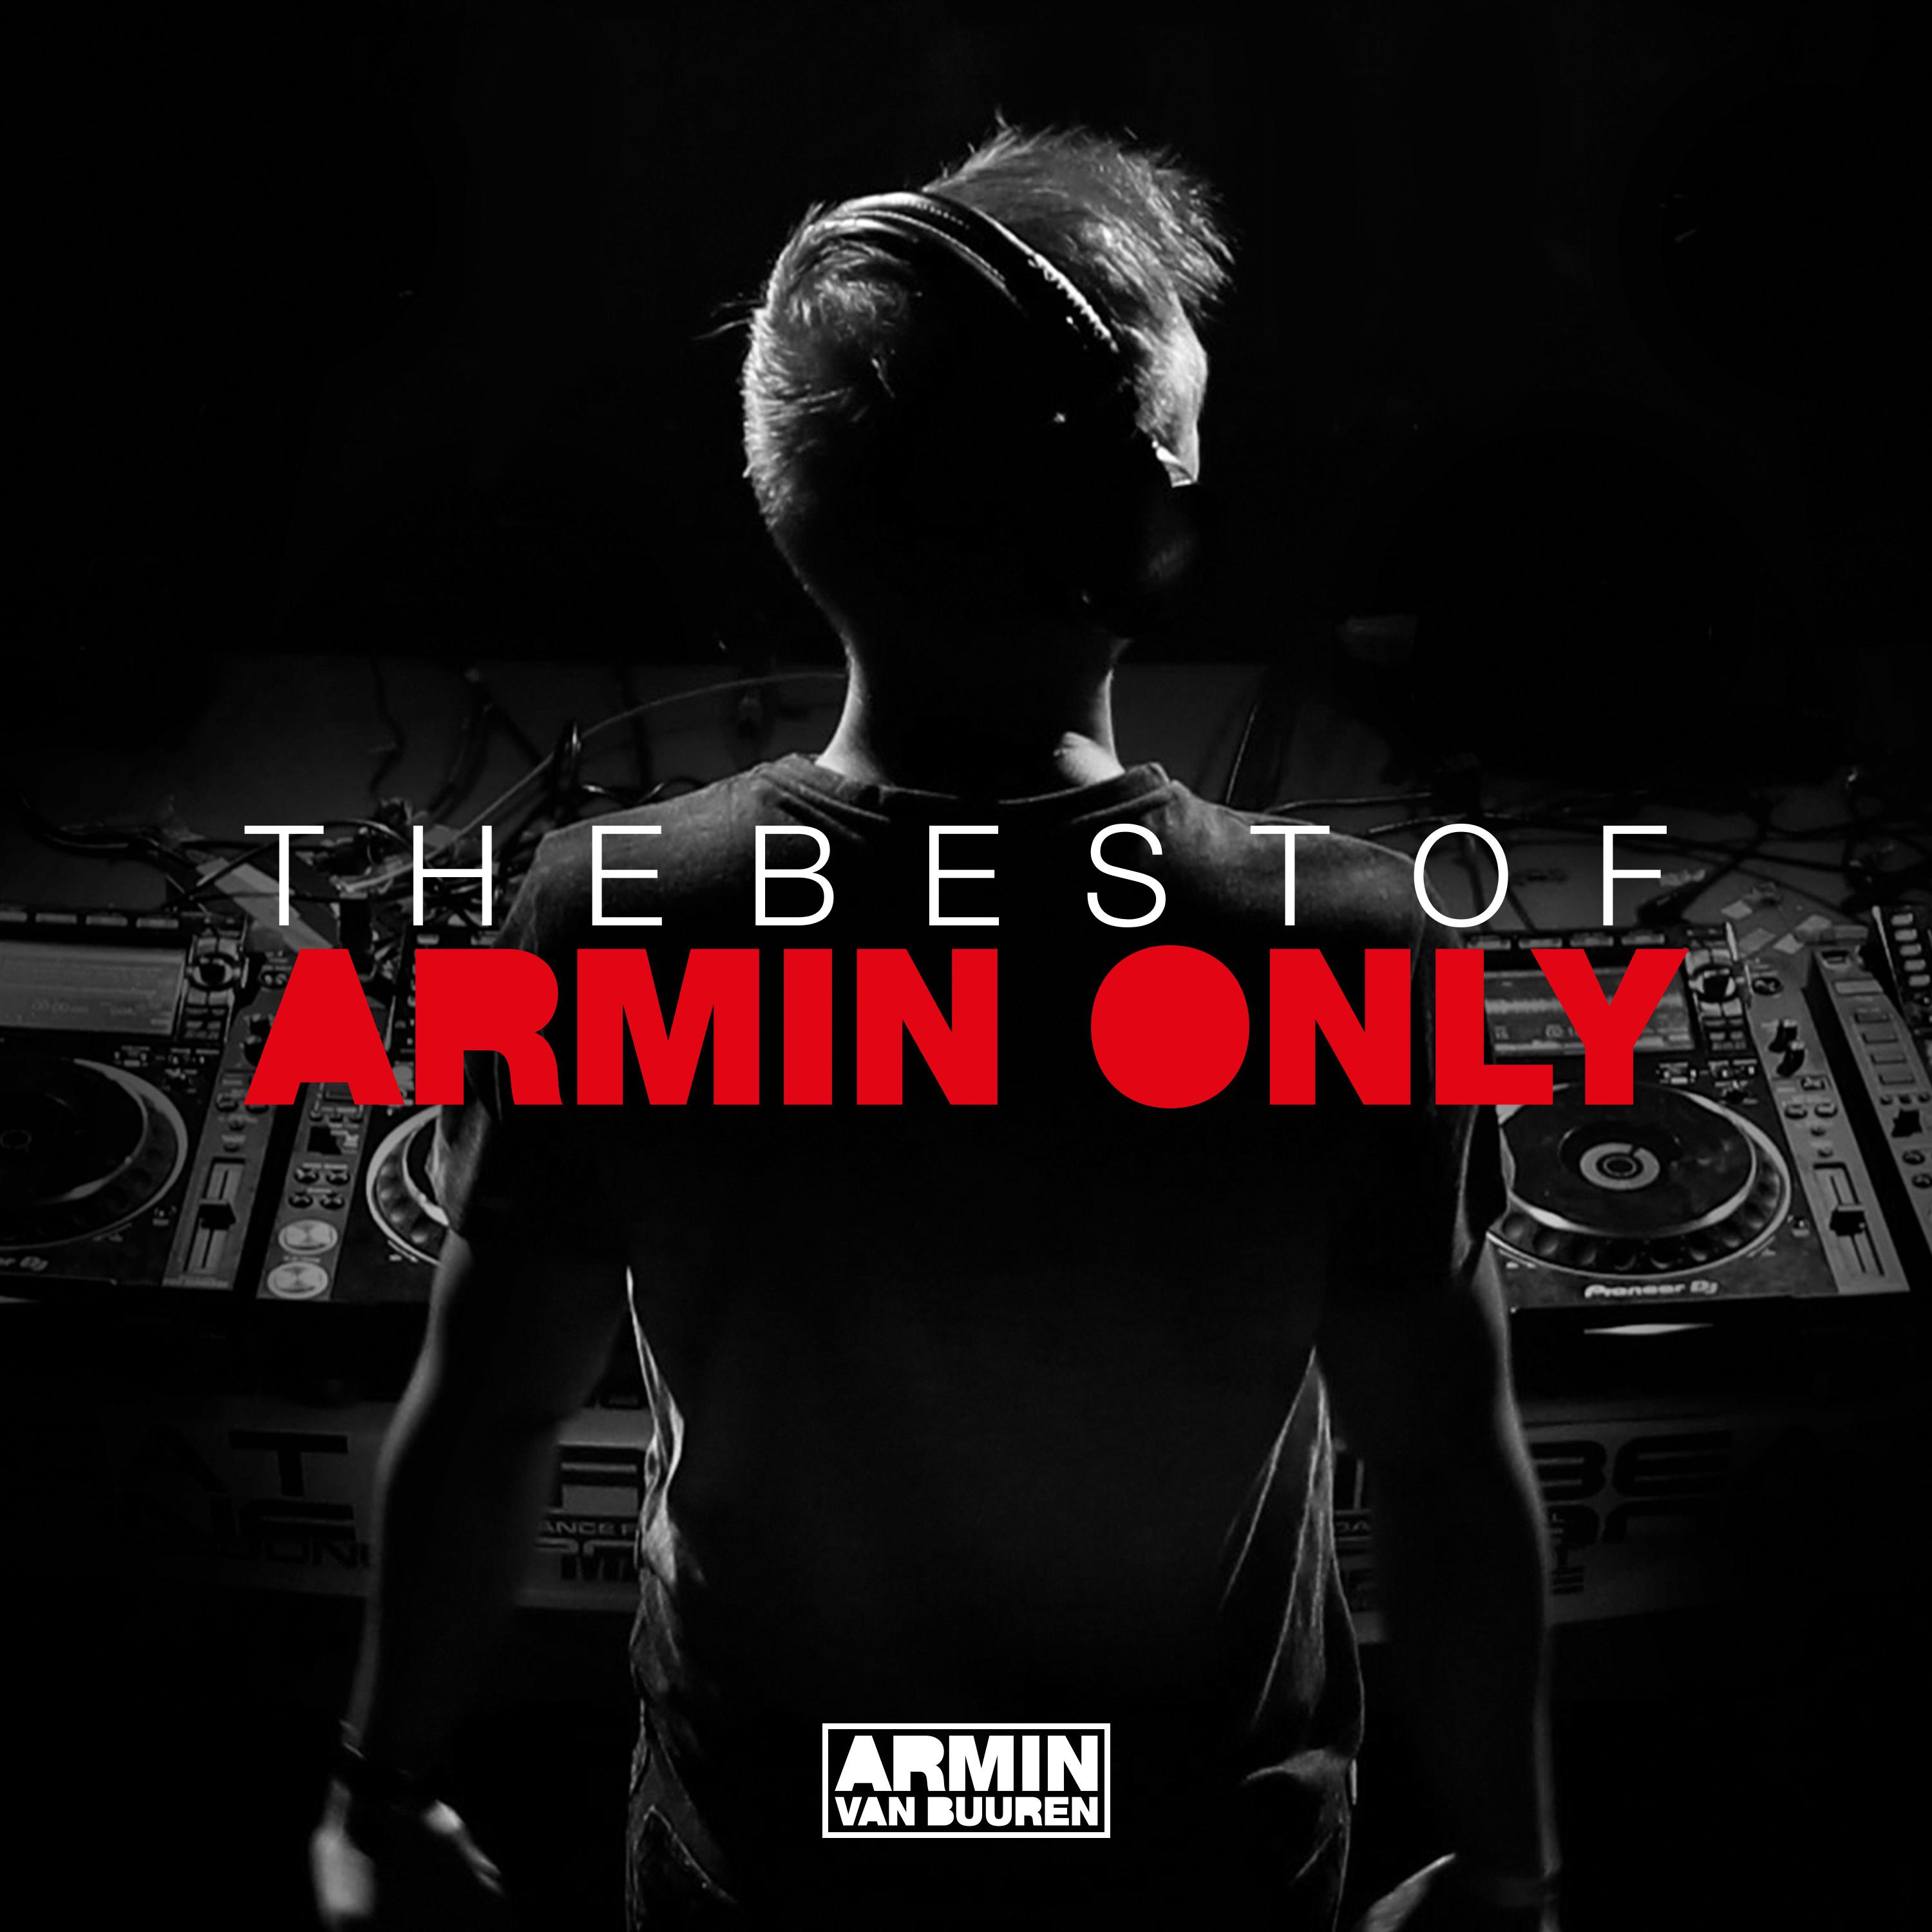 This Is What It Feels Like (Armin van Buuren Mash Up)歌词 歌手Armin van Buuren / Trevor Guthrie-专辑The Best Of Armin Only-单曲《This Is What It Feels Like (Armin van Buuren Mash Up)》LRC歌词下载